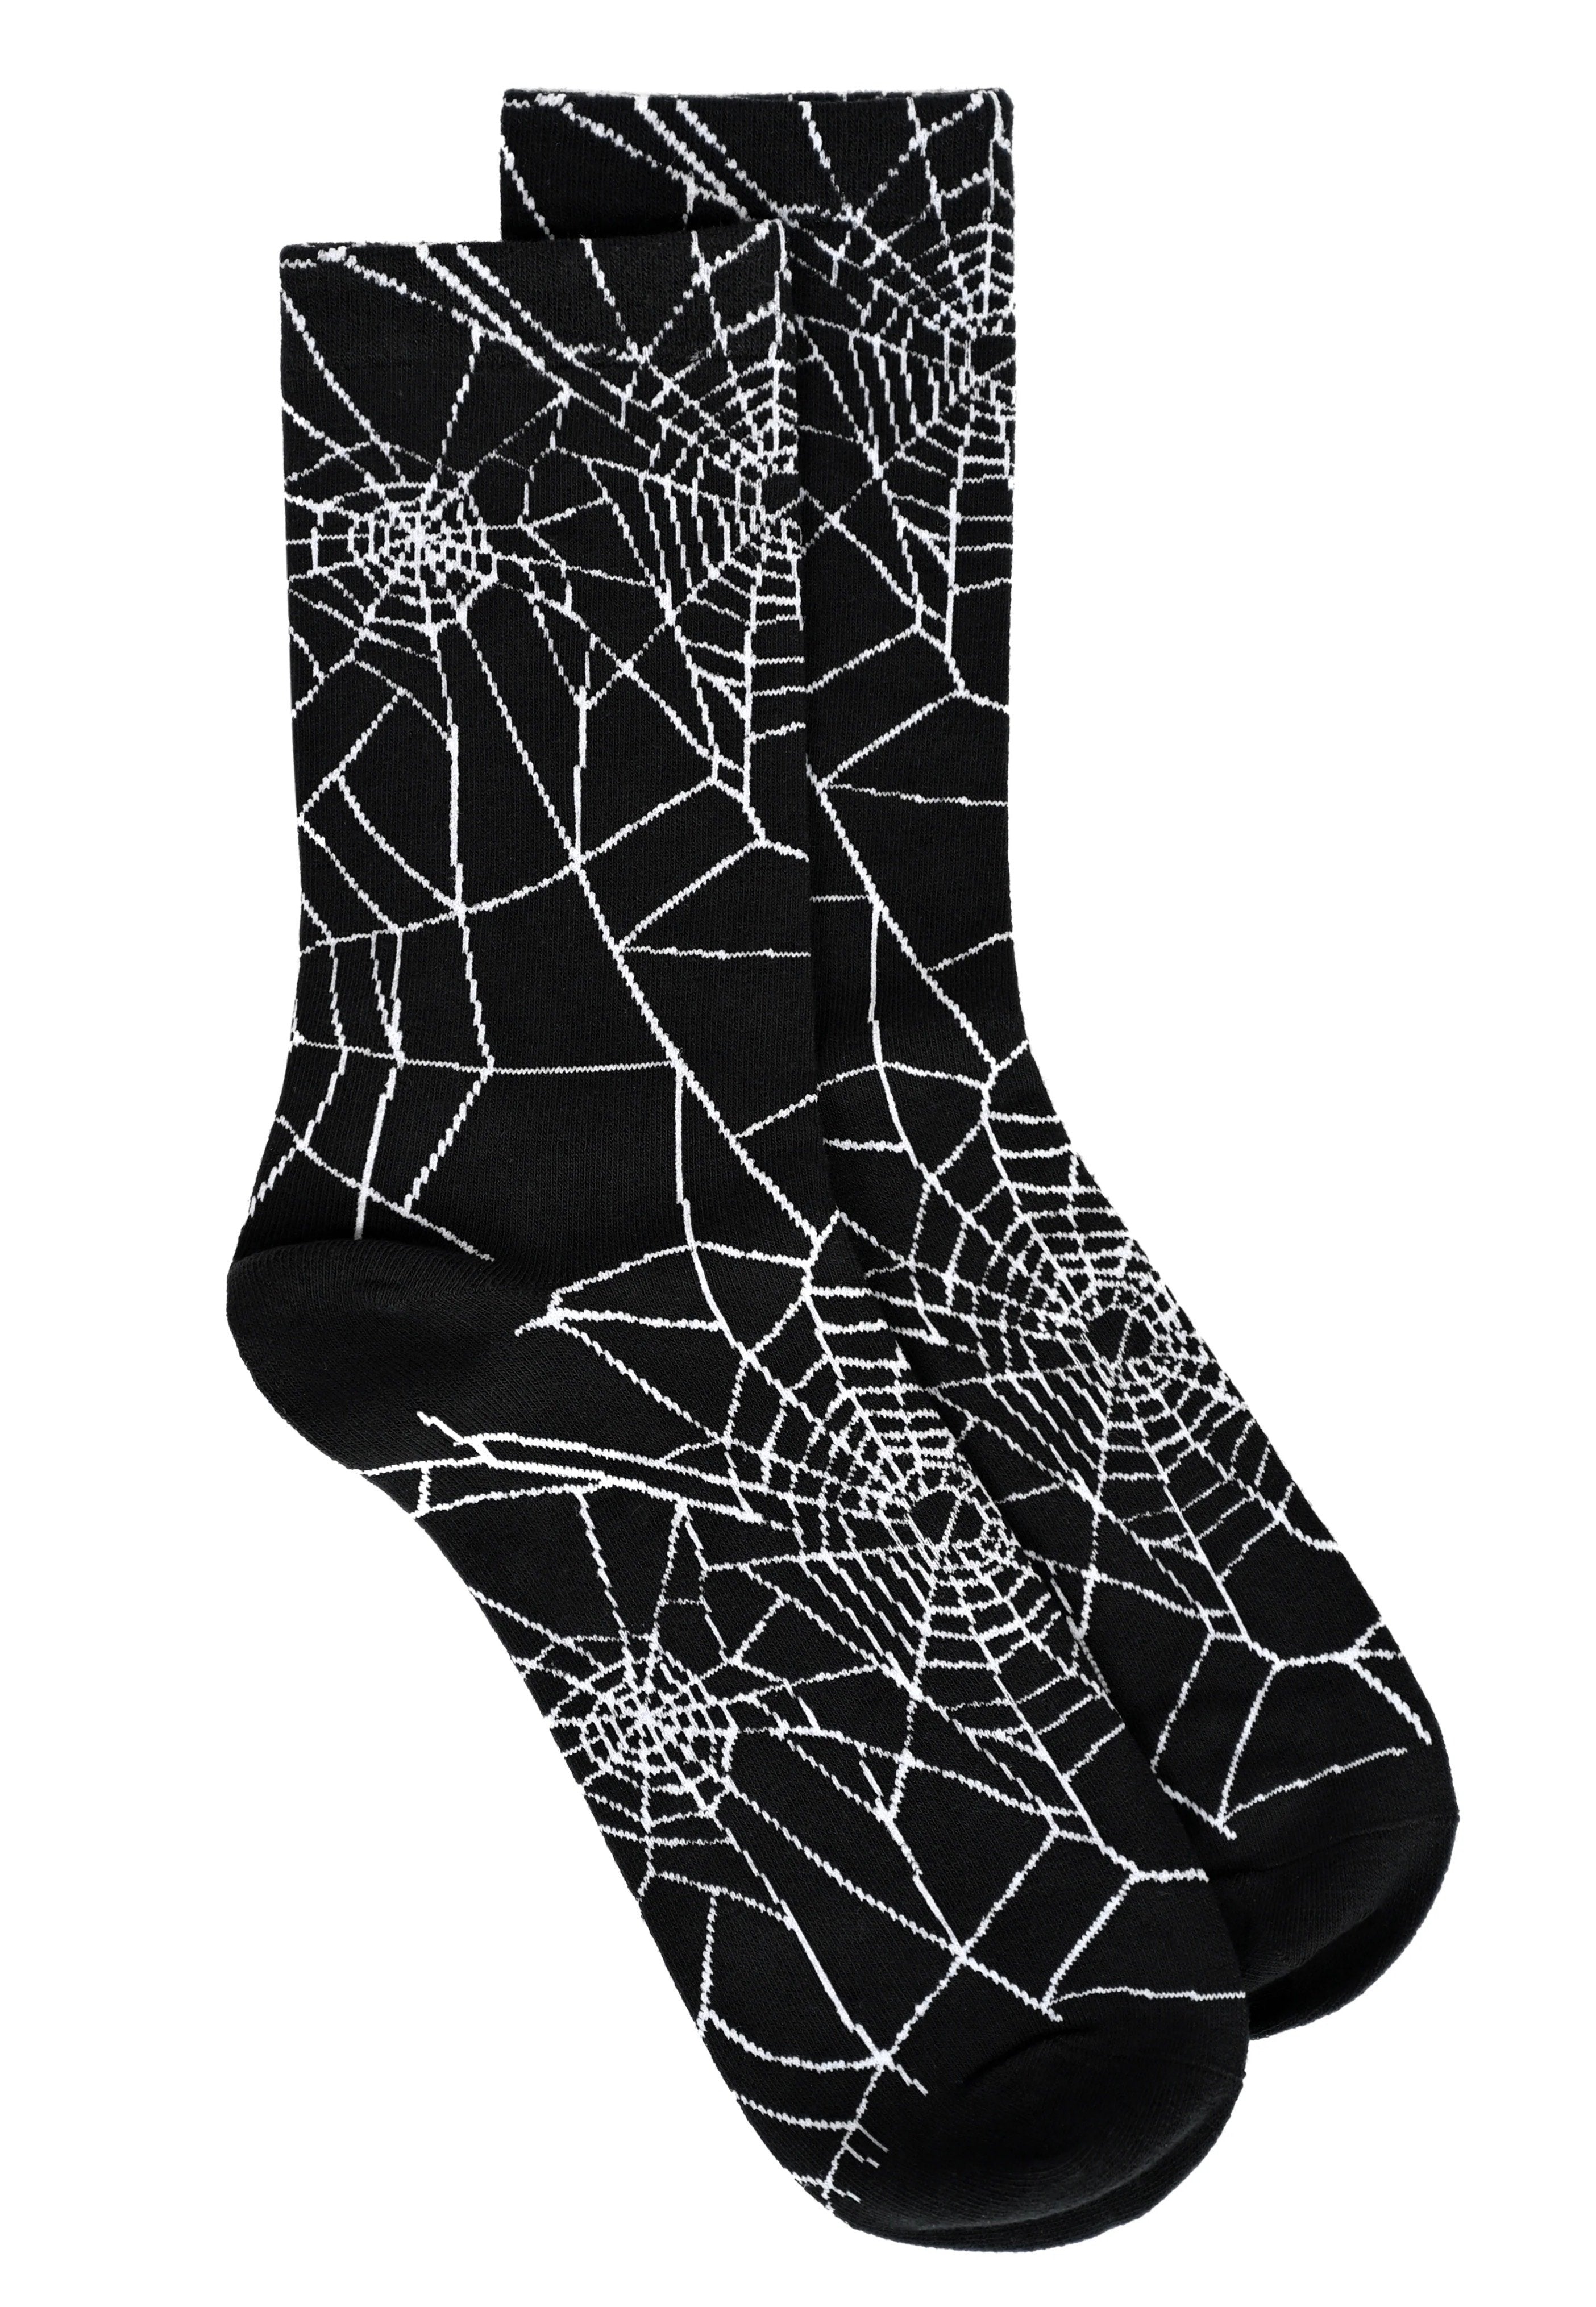 Foxblood - Cobweb Black - Socks